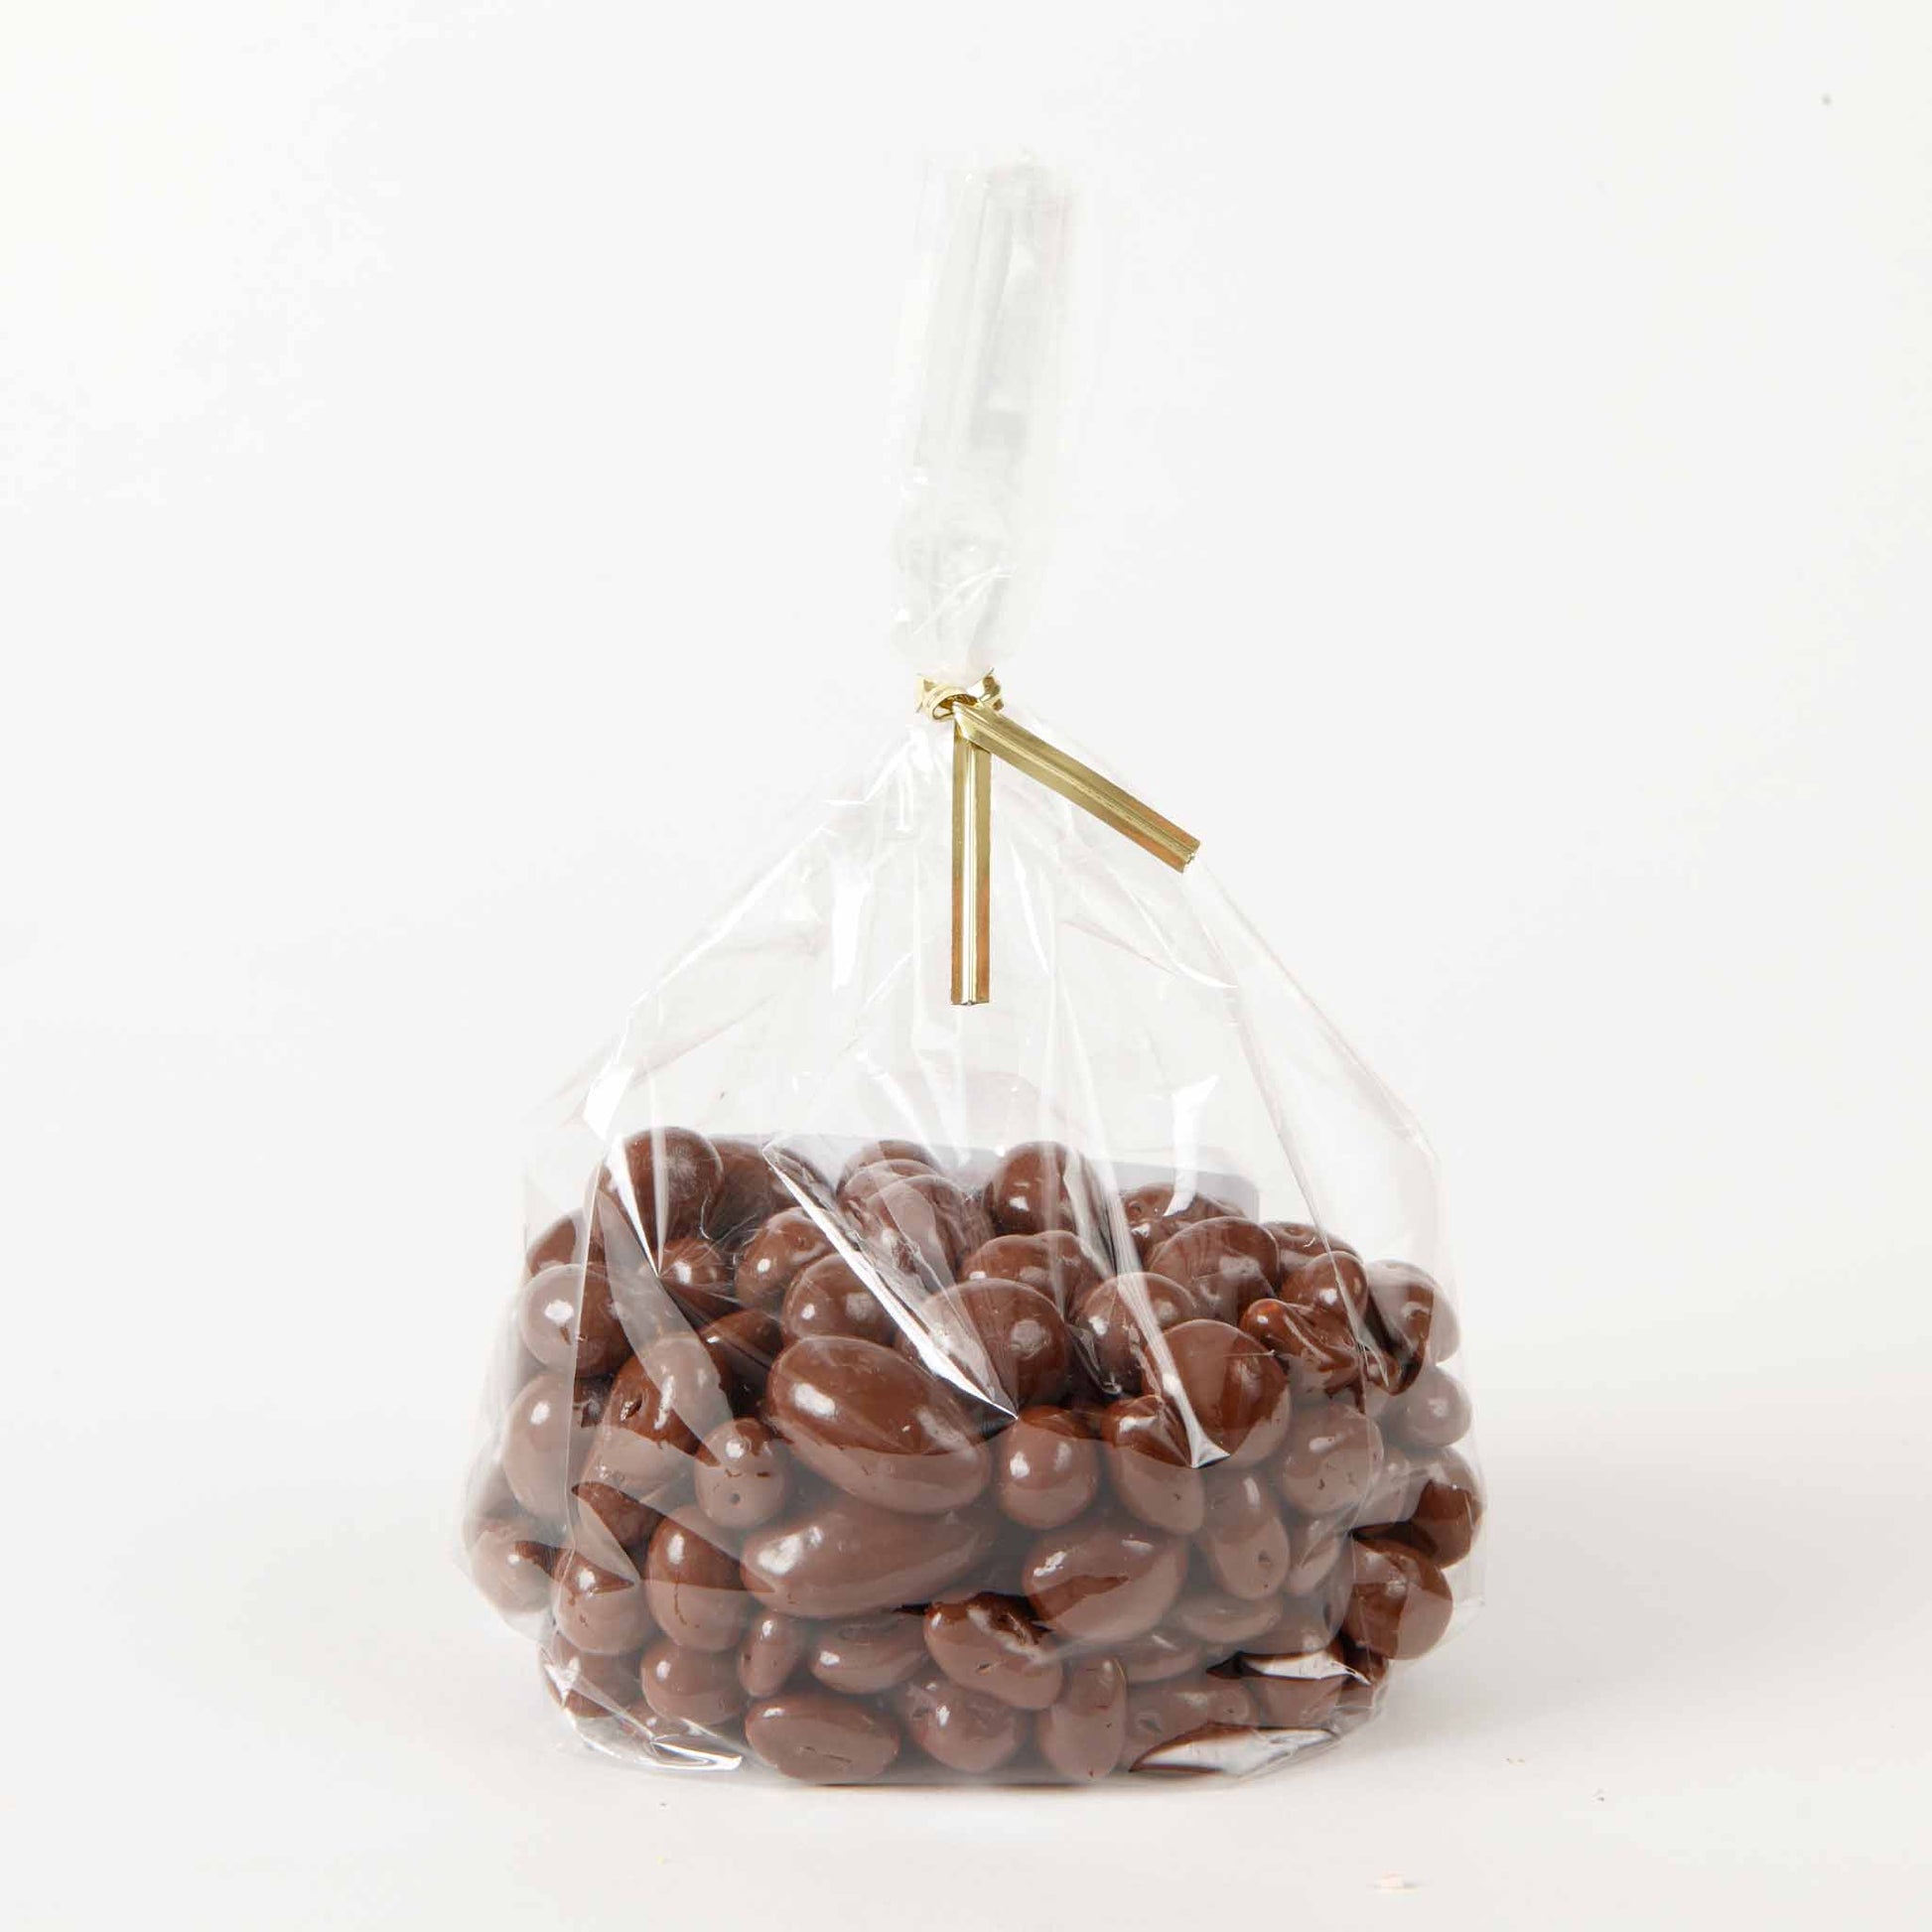 Mix Chocolate Chunks 3.88 oz - Bosanet